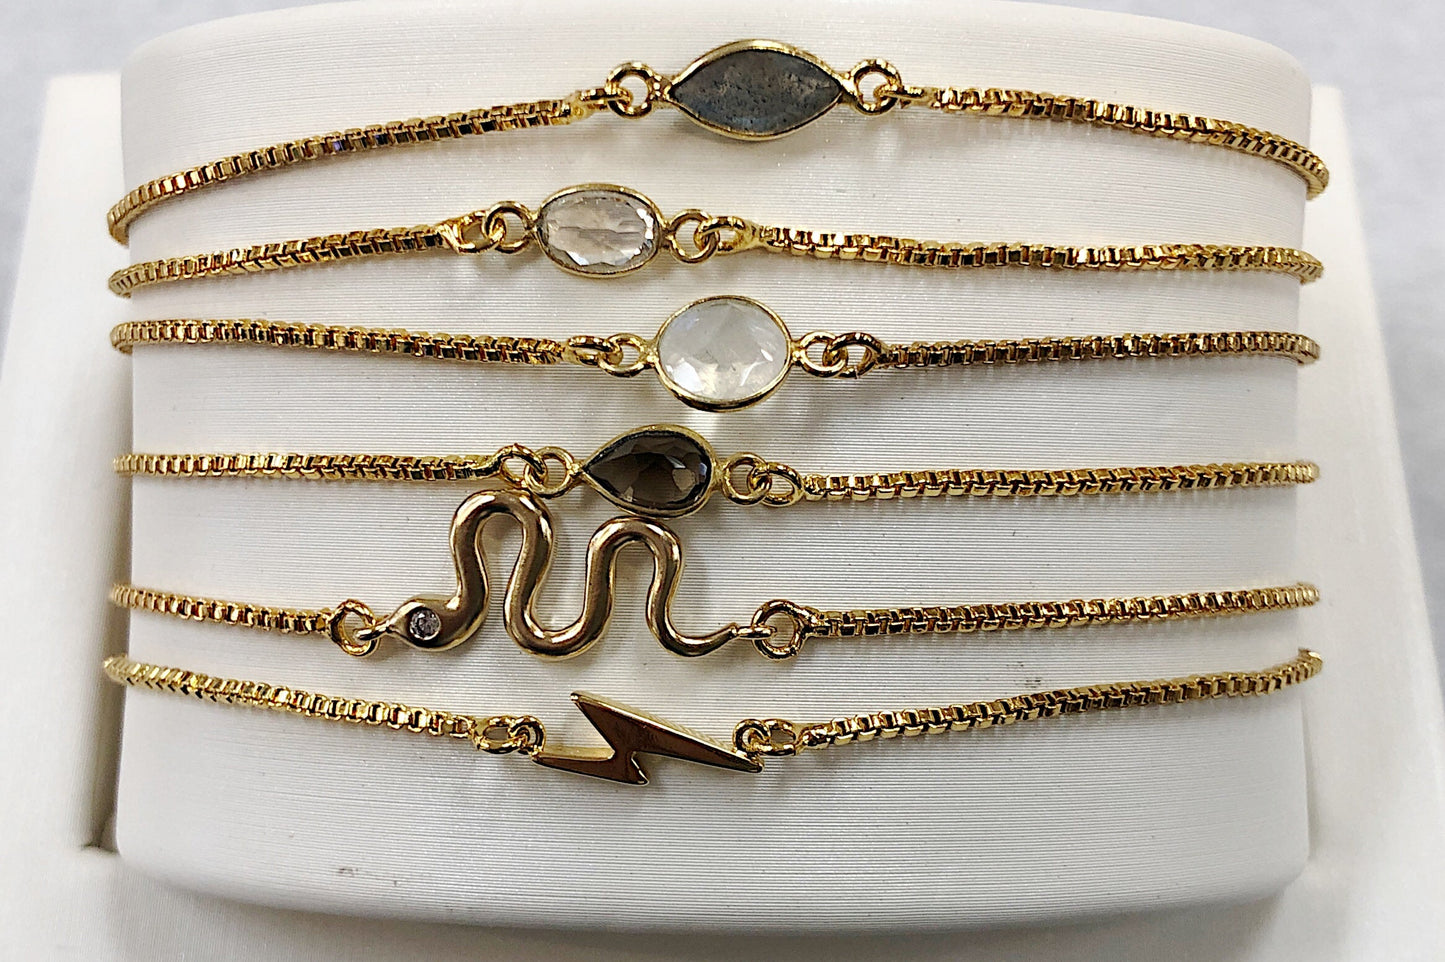 Slide Bracelets - Premium Bracelets from Harper Made - Just $27! Shop now at Three Blessed Gems